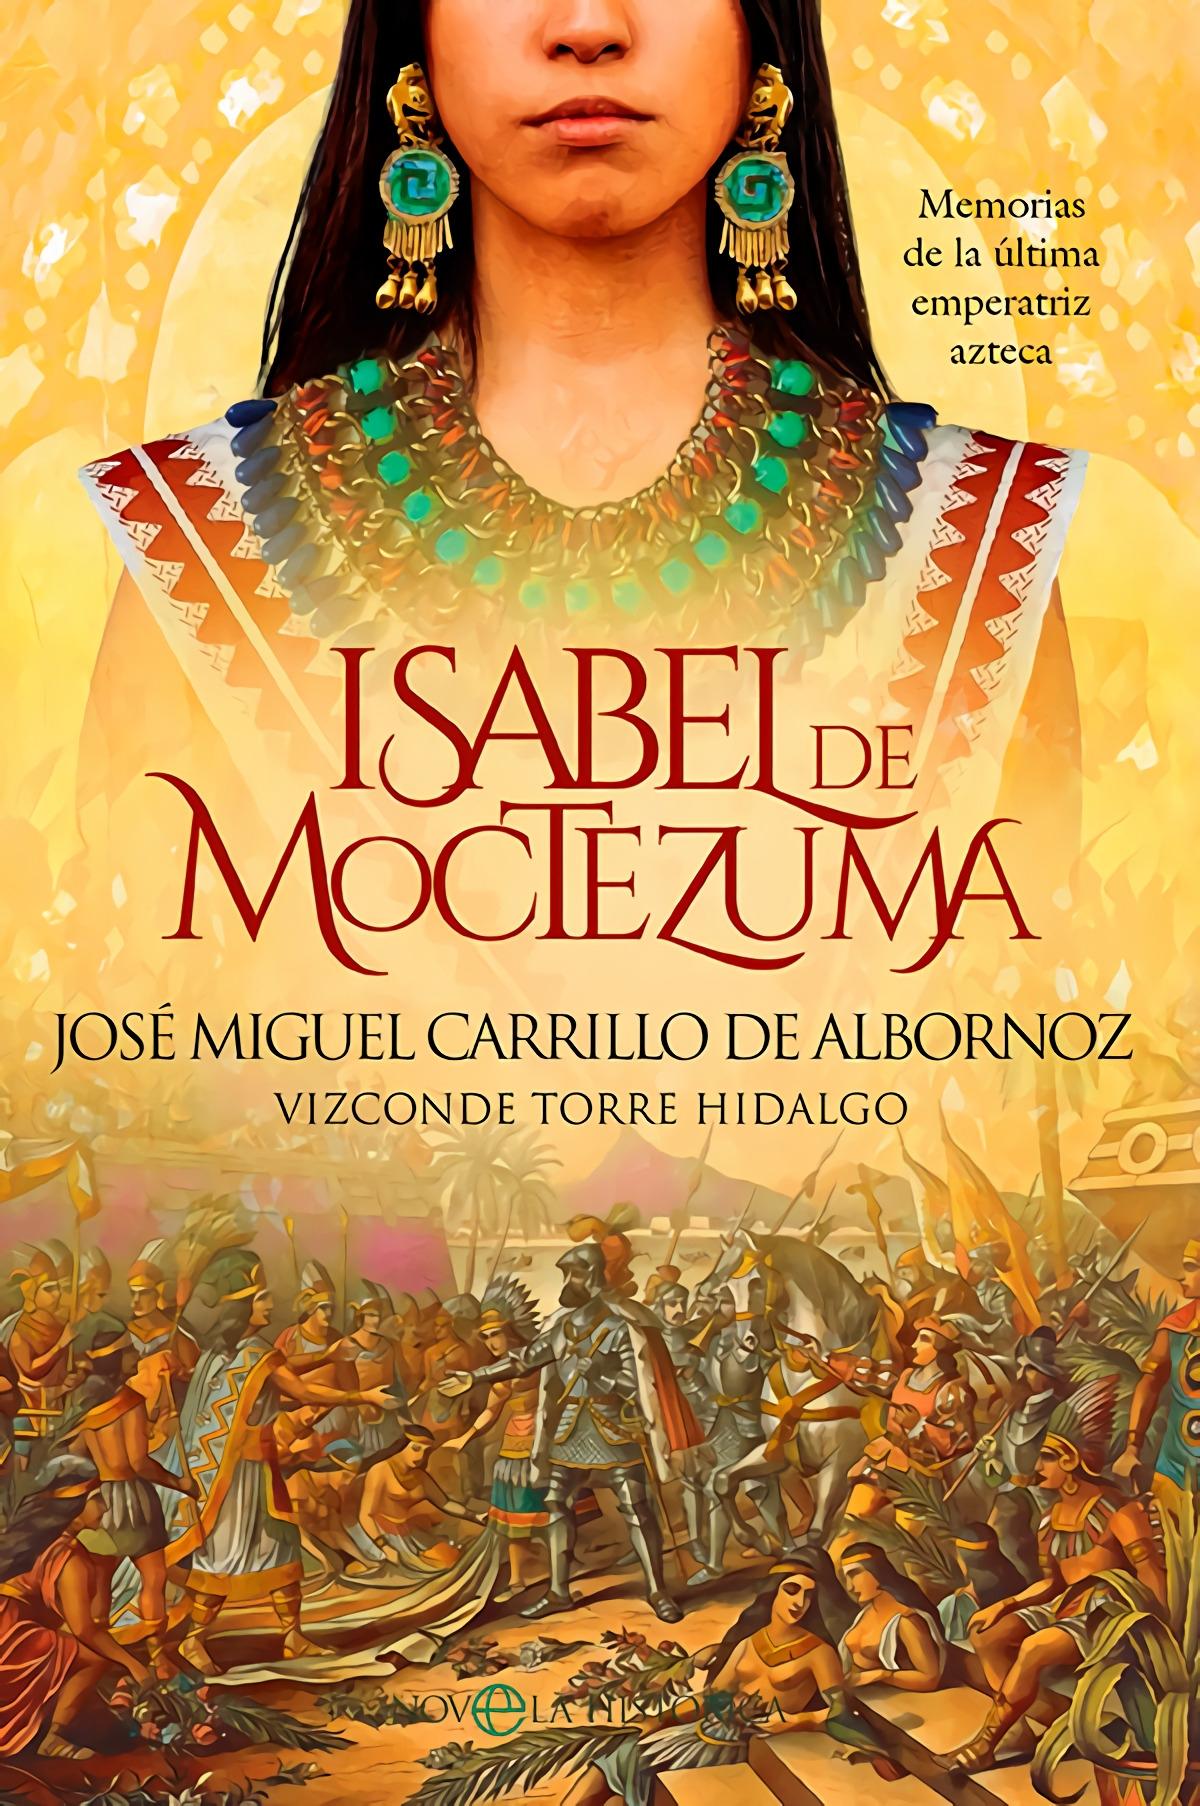 Isabel de Moctezuma "Memorias de la última emperatriz azteca"